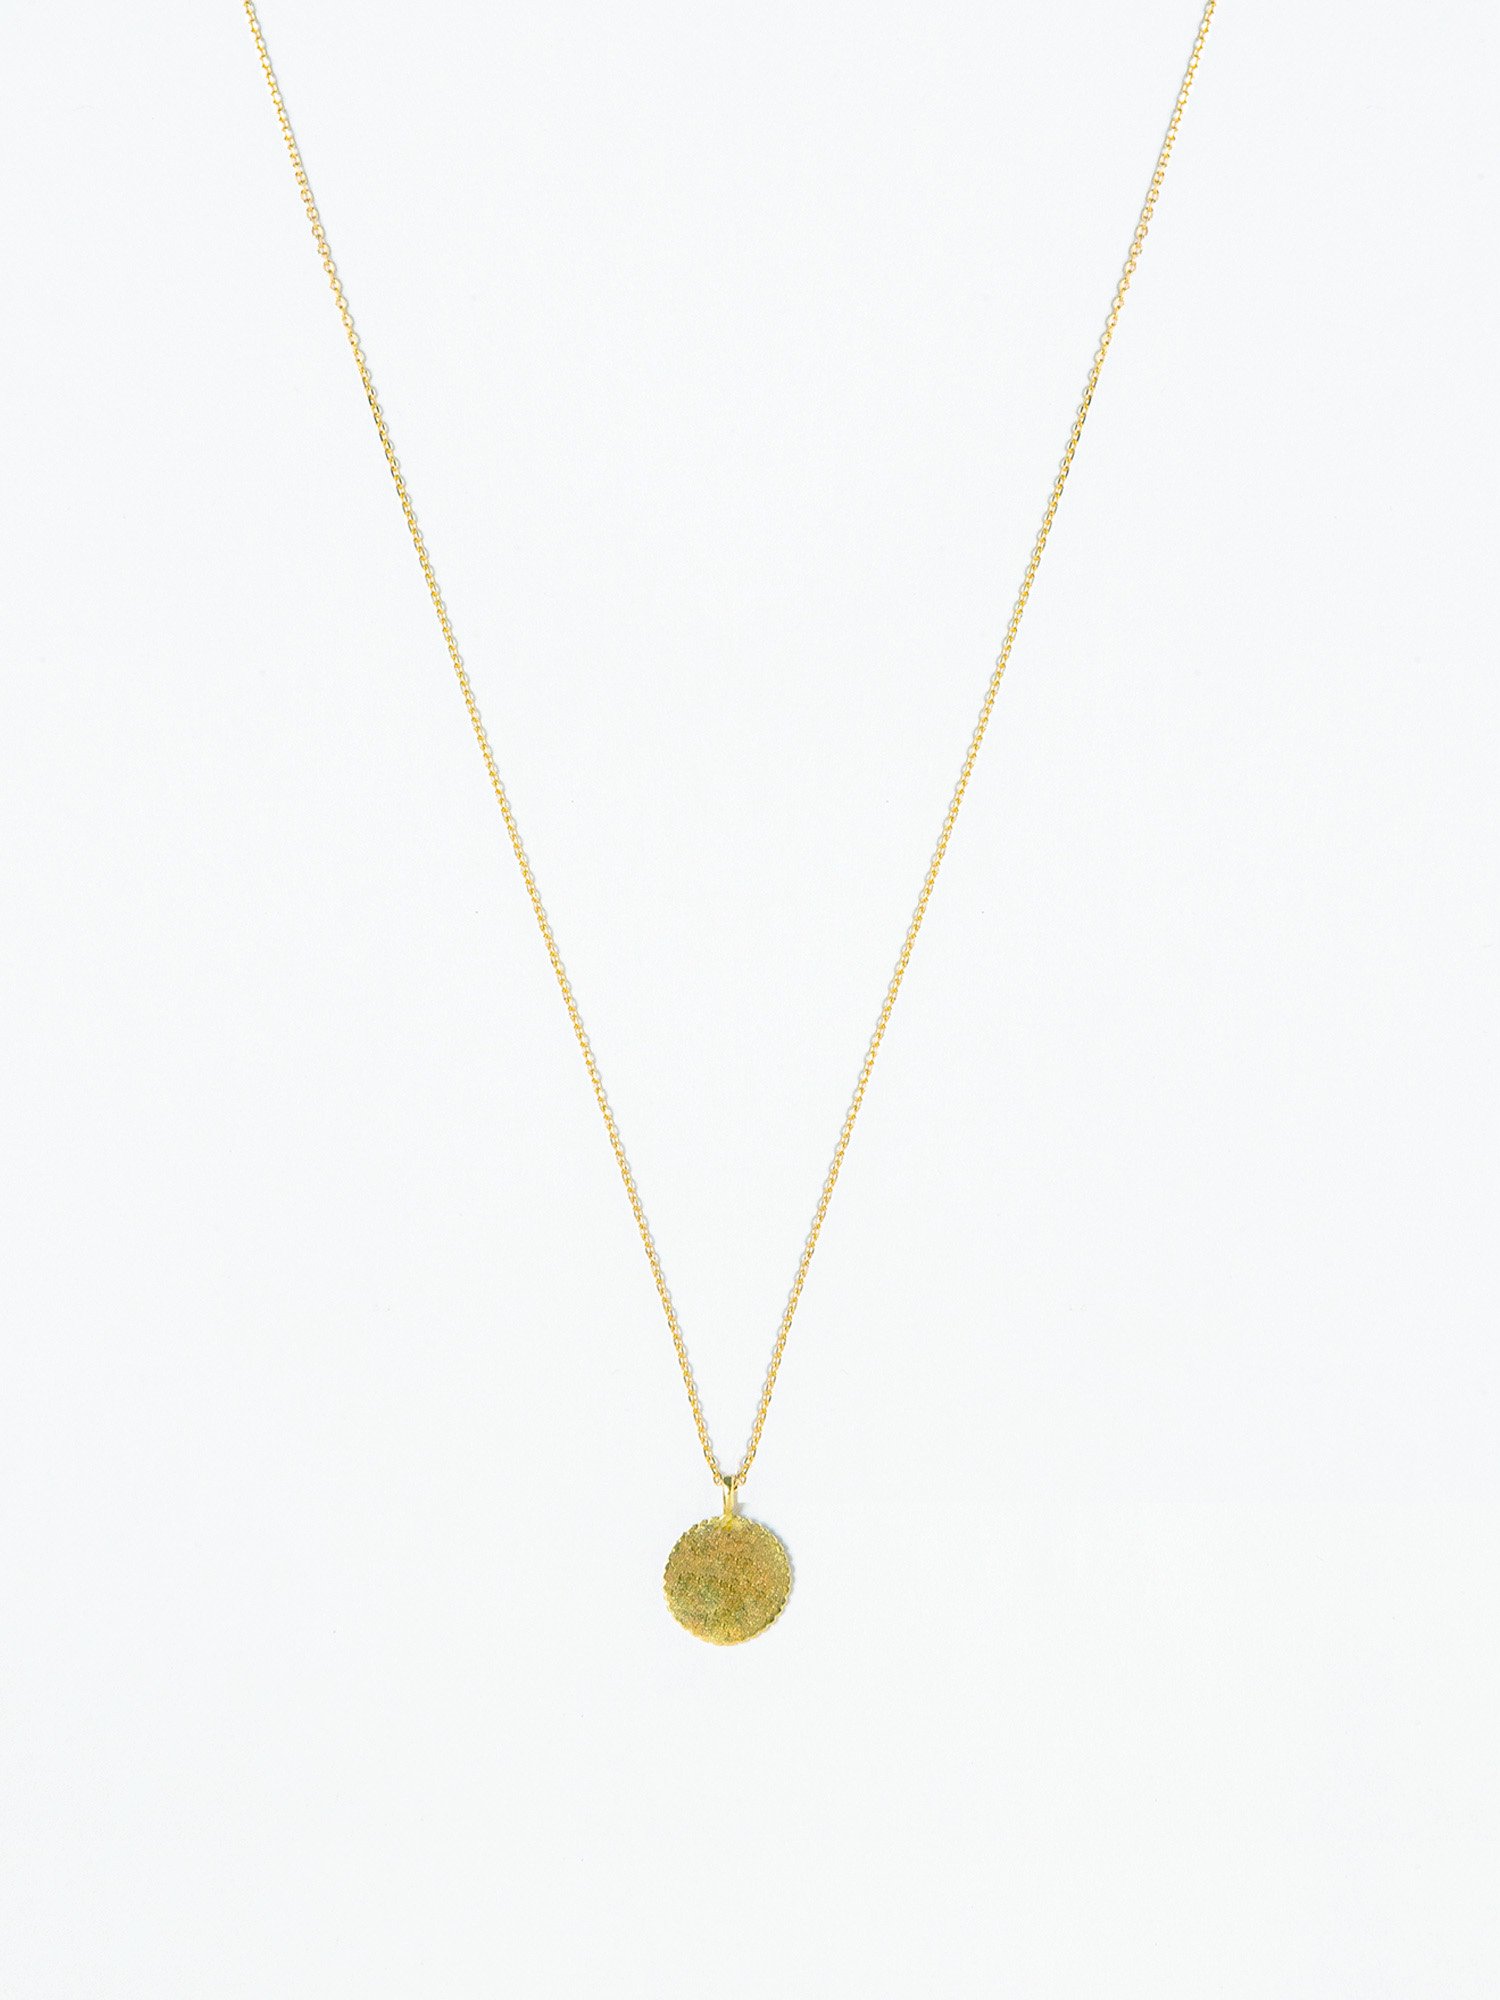 HELIOS / French Medallion necklace - GIGI Jewelry